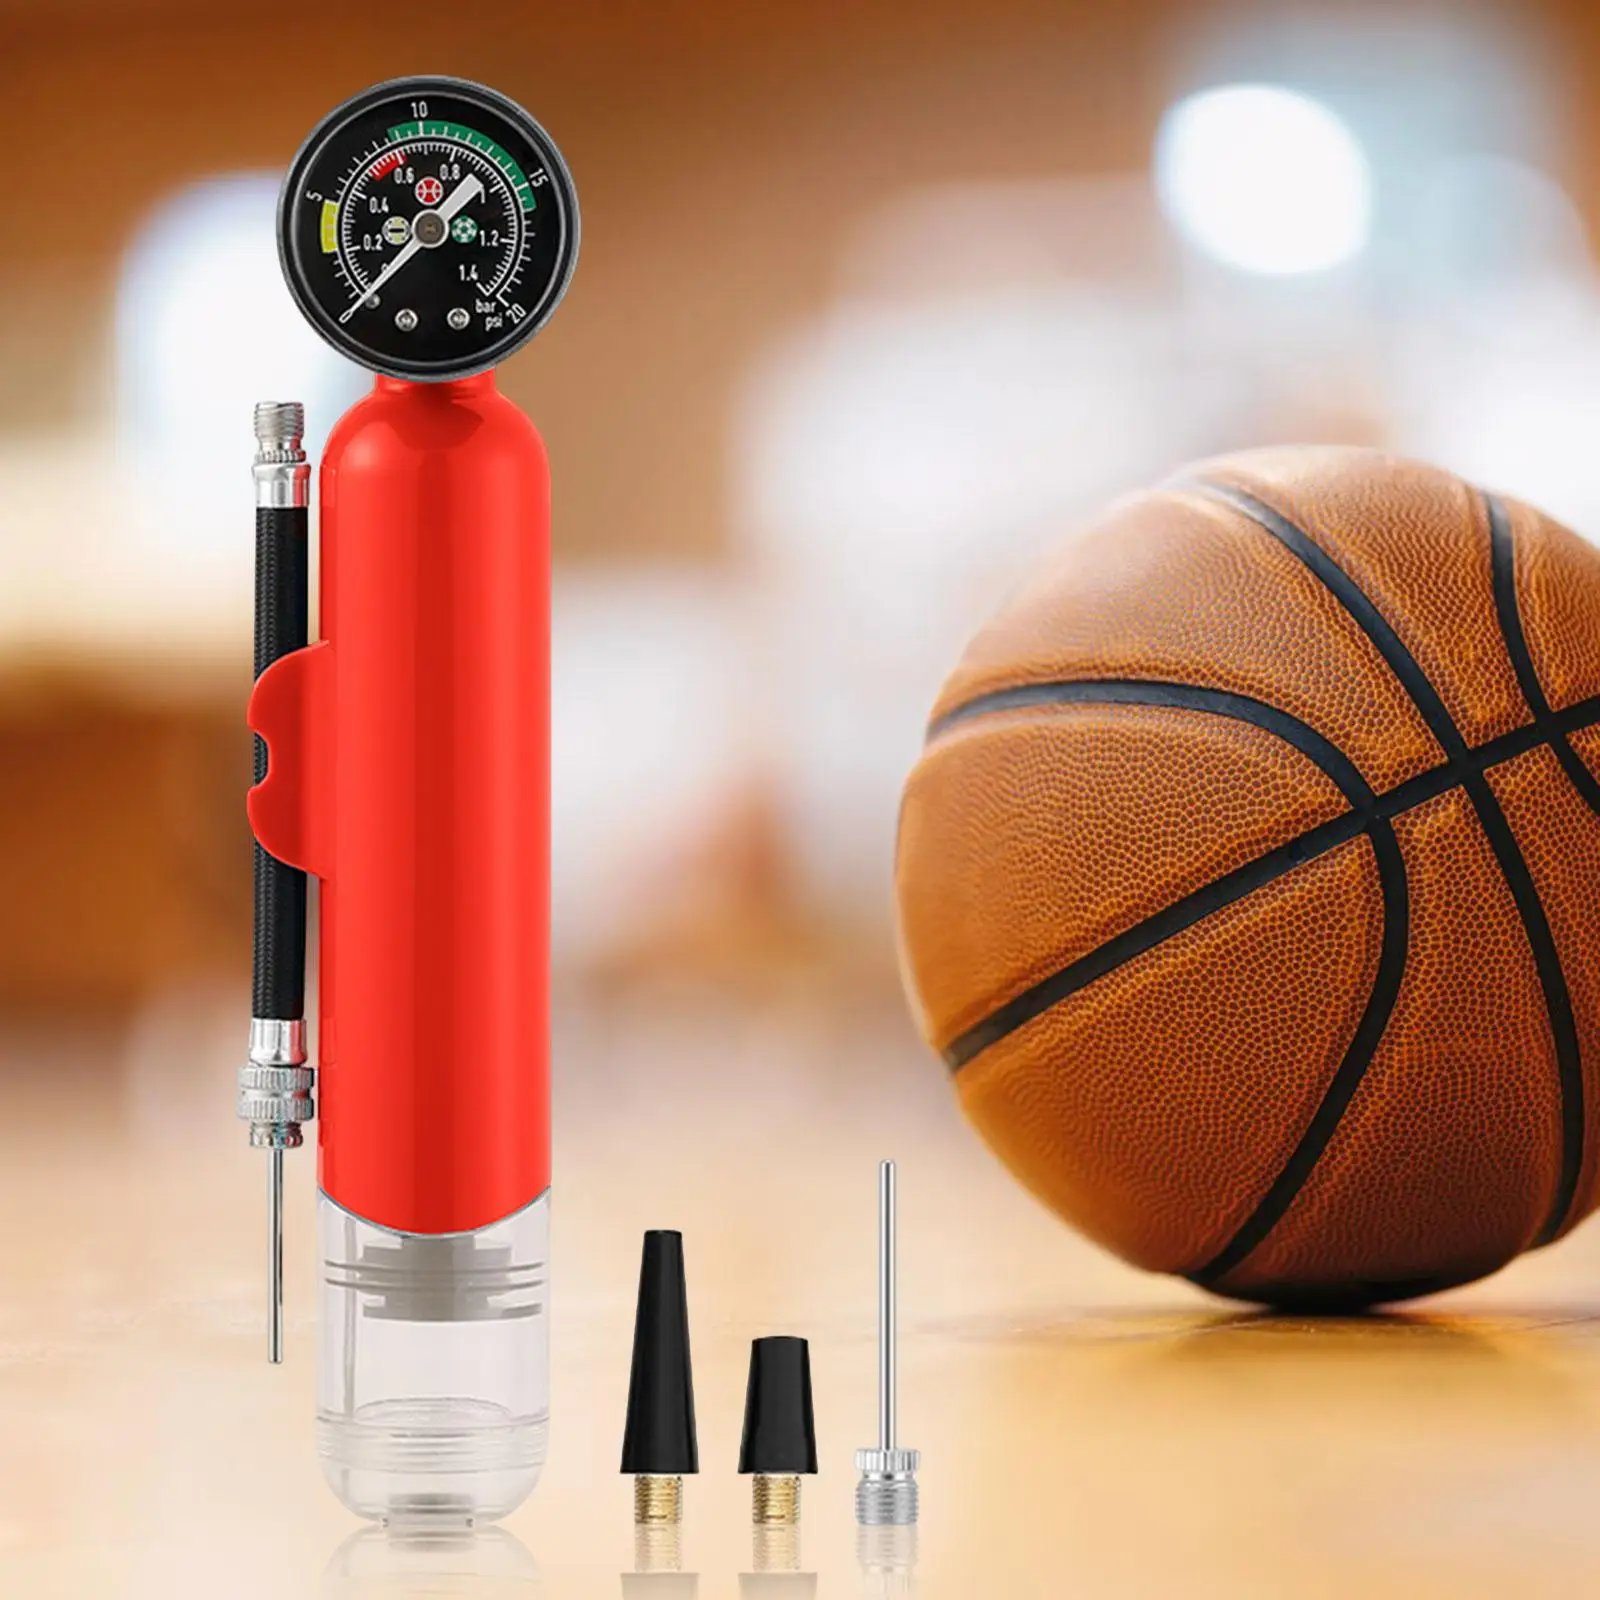 Ball Pump with Pressure Gauge, Hand Pump, Lightweight Rainproof Yoga Ball,